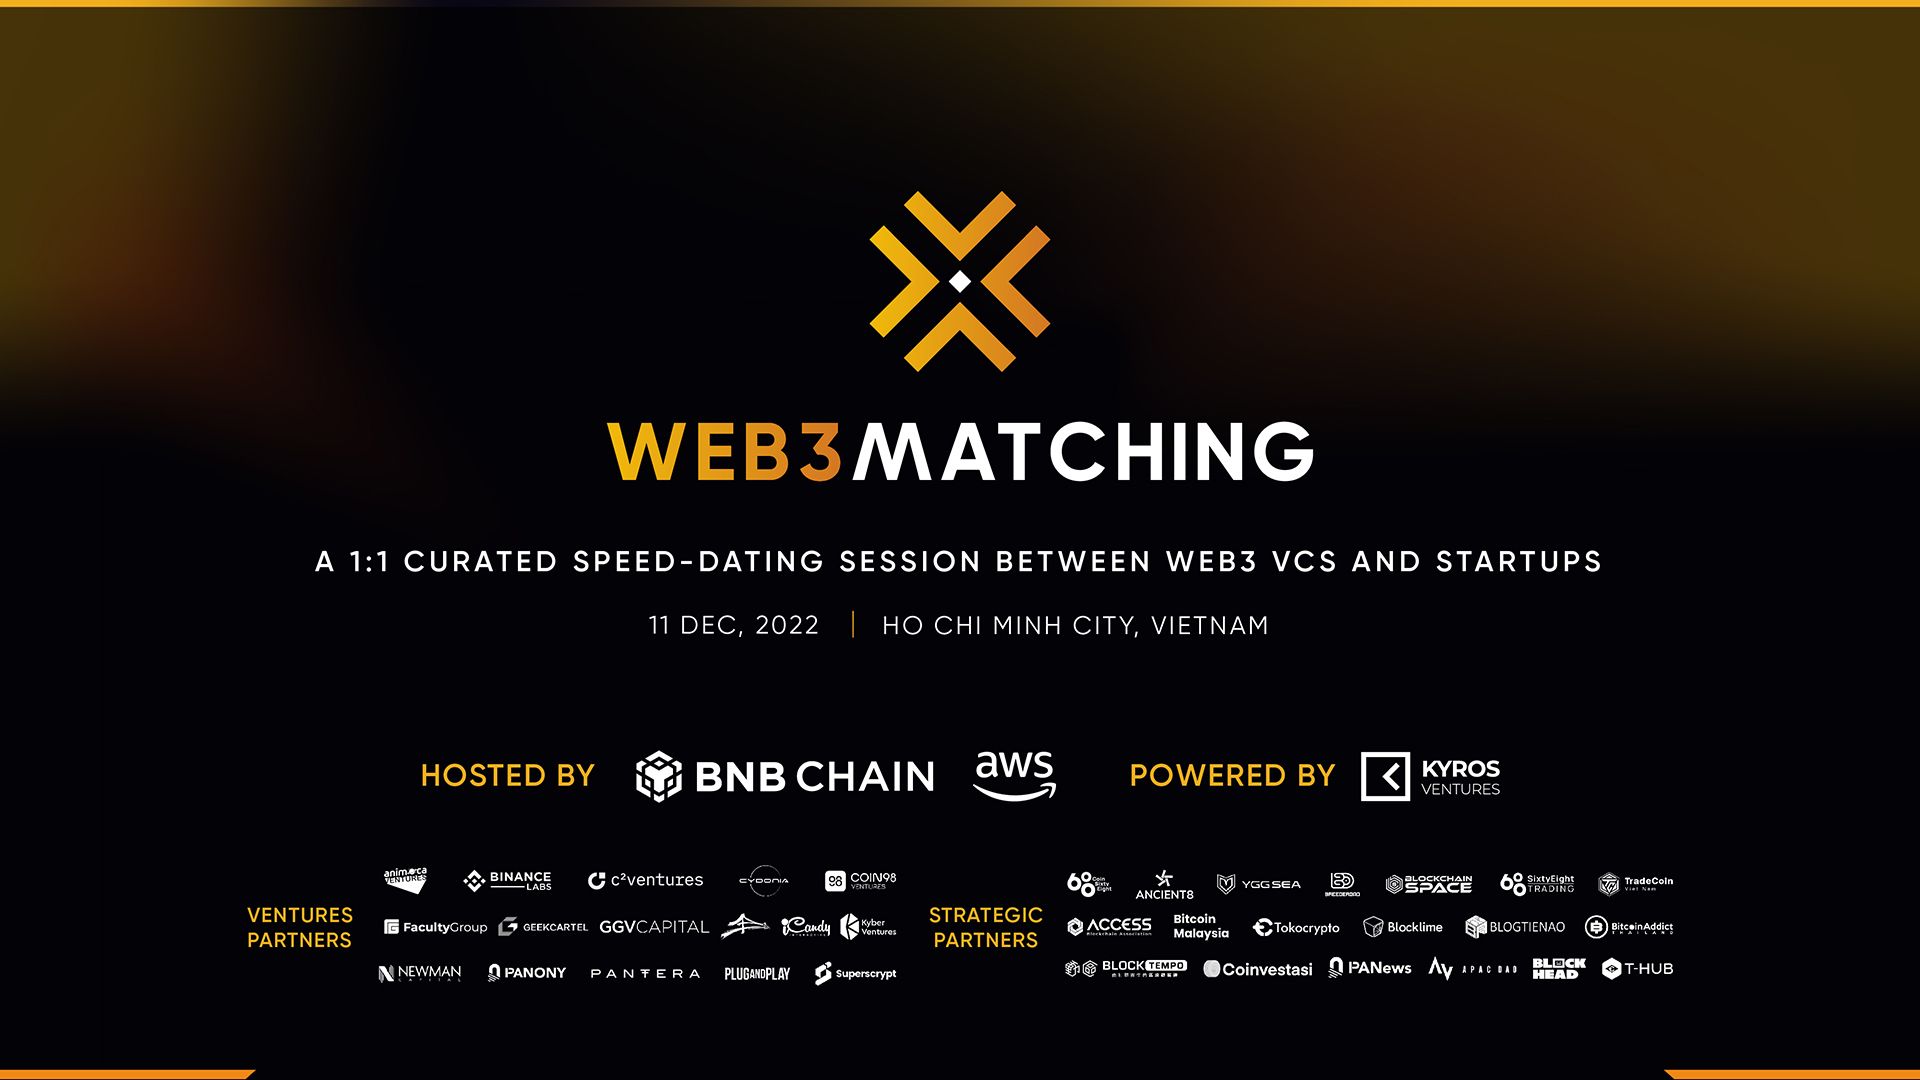 WEB3 MATCHING – Sự kiện Web3 độc quyền bởi AWS, BNB Chain và Kyros Ventures